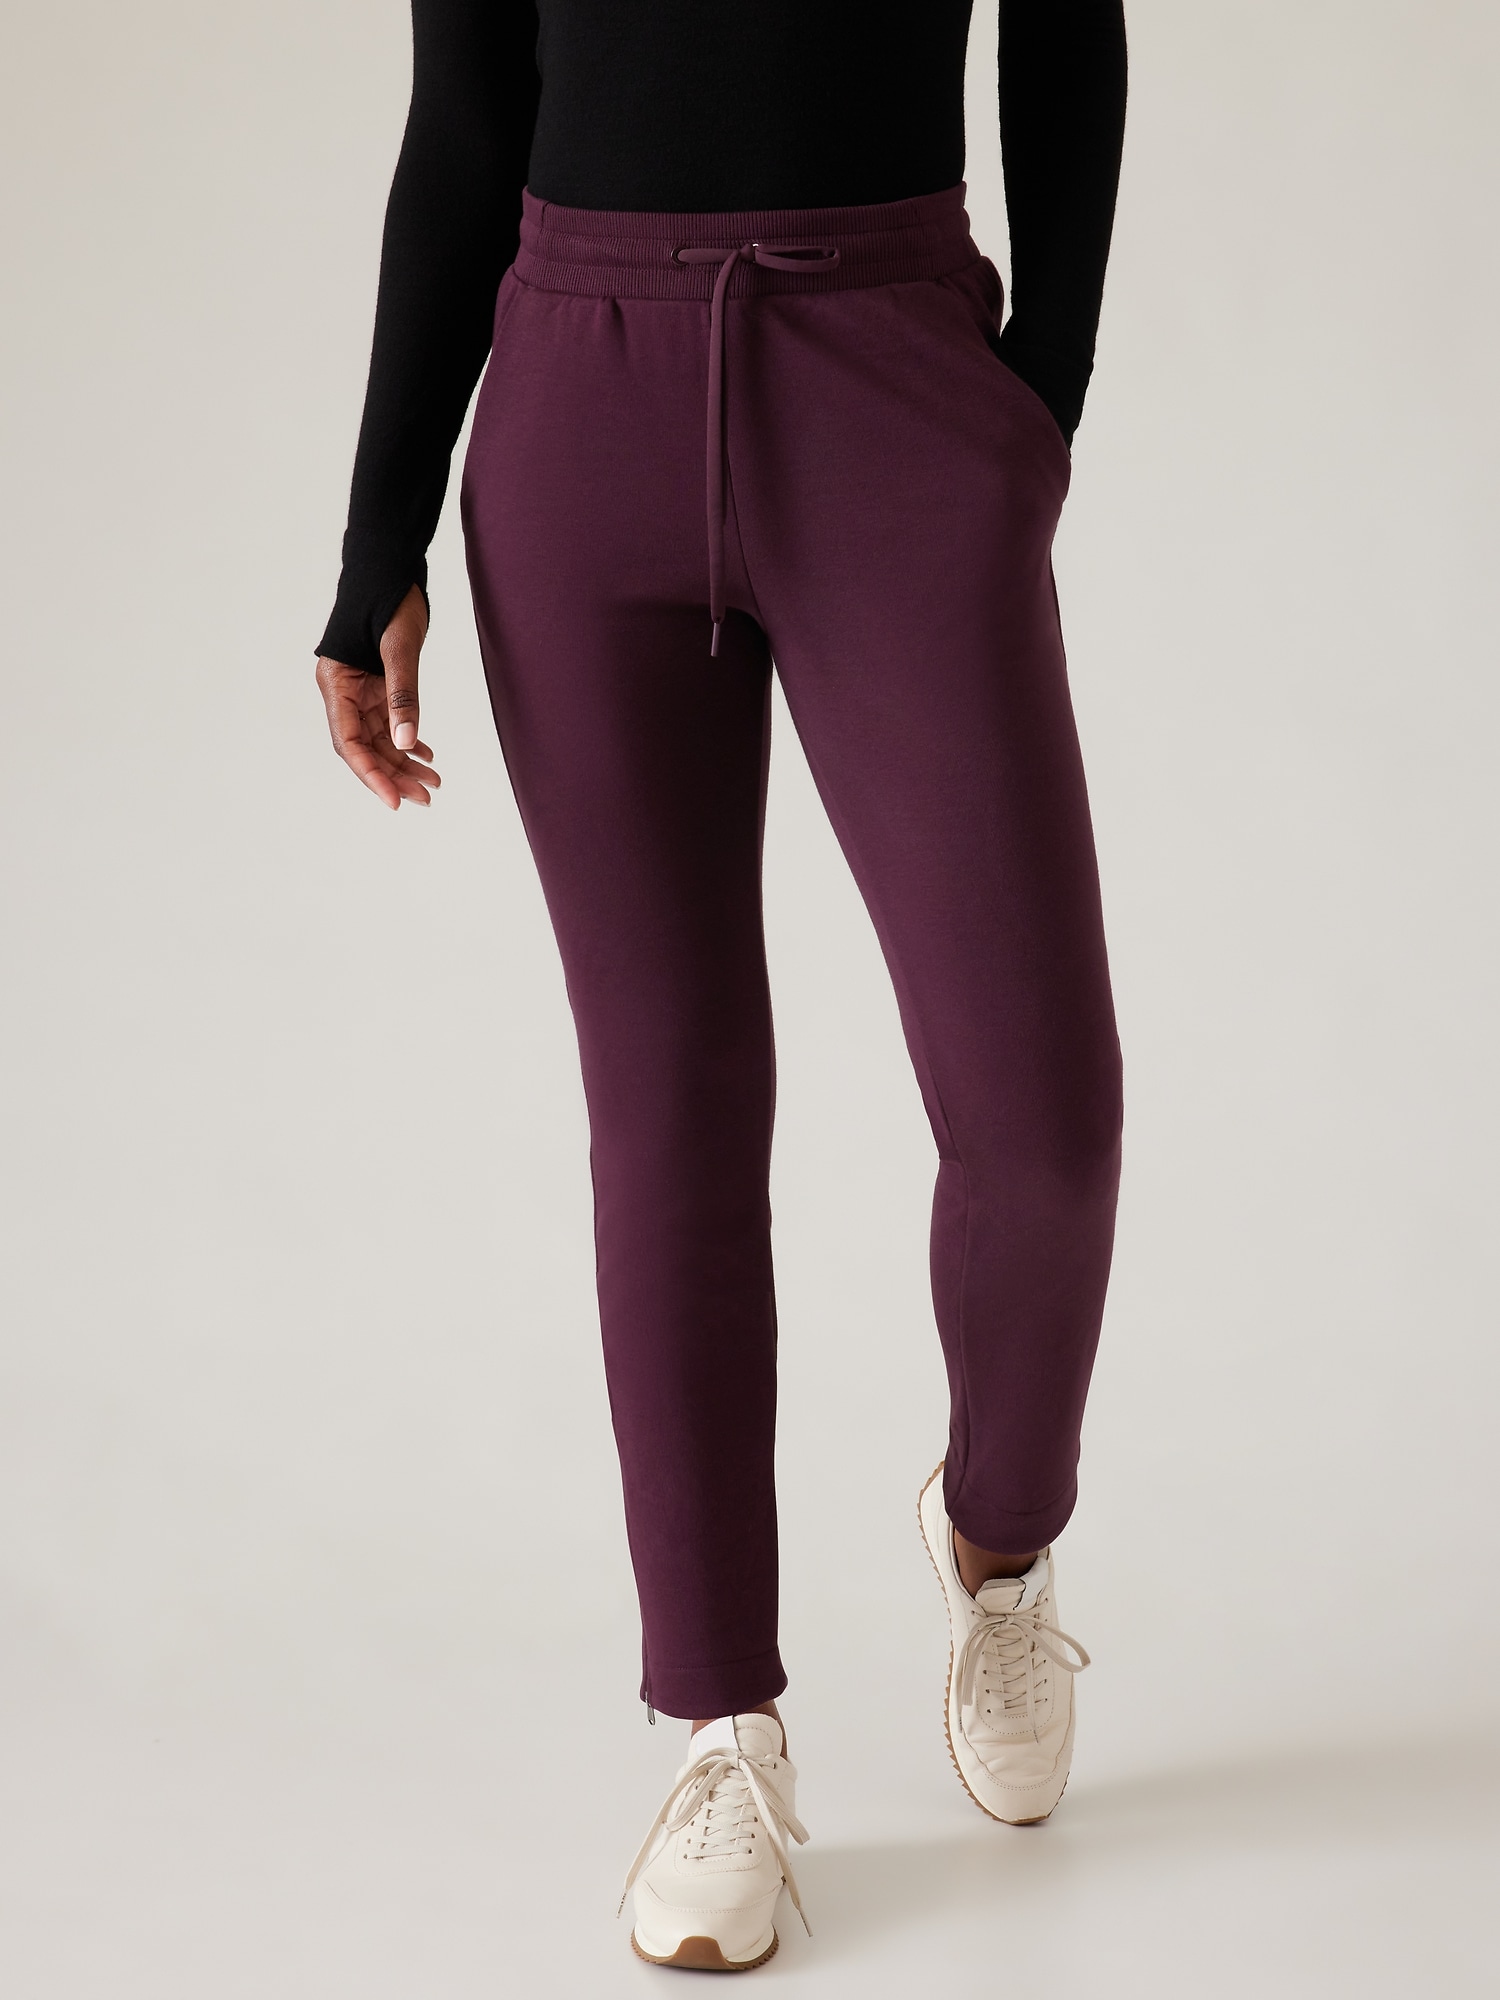 Francisca Dark Purple Plus Soft Knit Joggers, 2X-4X